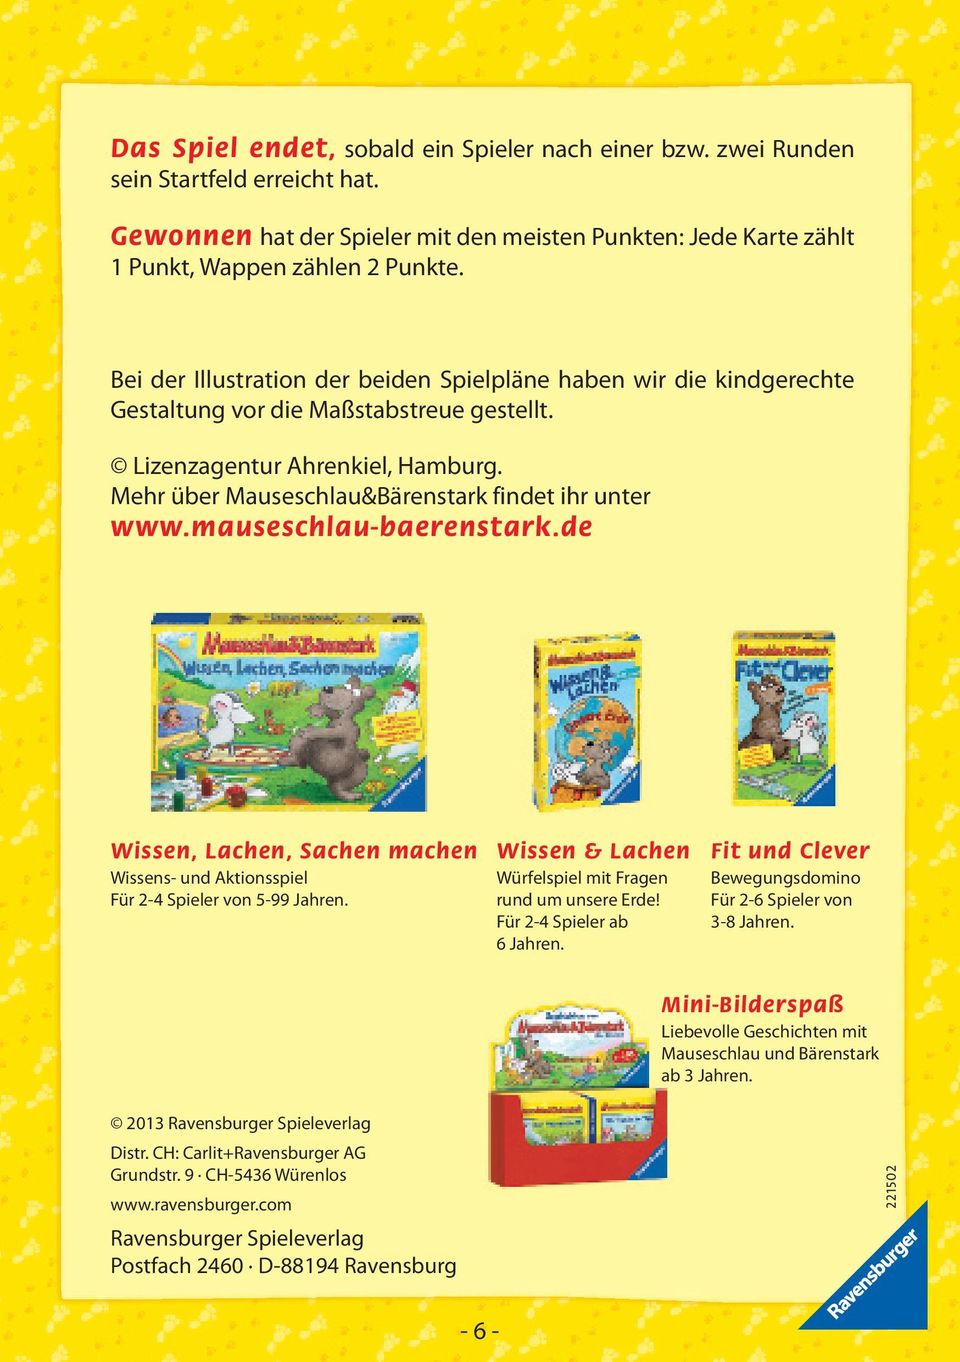 Mehr über Mauseschlau&Bärenstark findet ihr unter www.mauseschlau-baerenstark.de Wissen, Lachen, Sachen machen Wissens- und Aktionsspiel Für 2-4 Spieler von 5-99 Jahren.